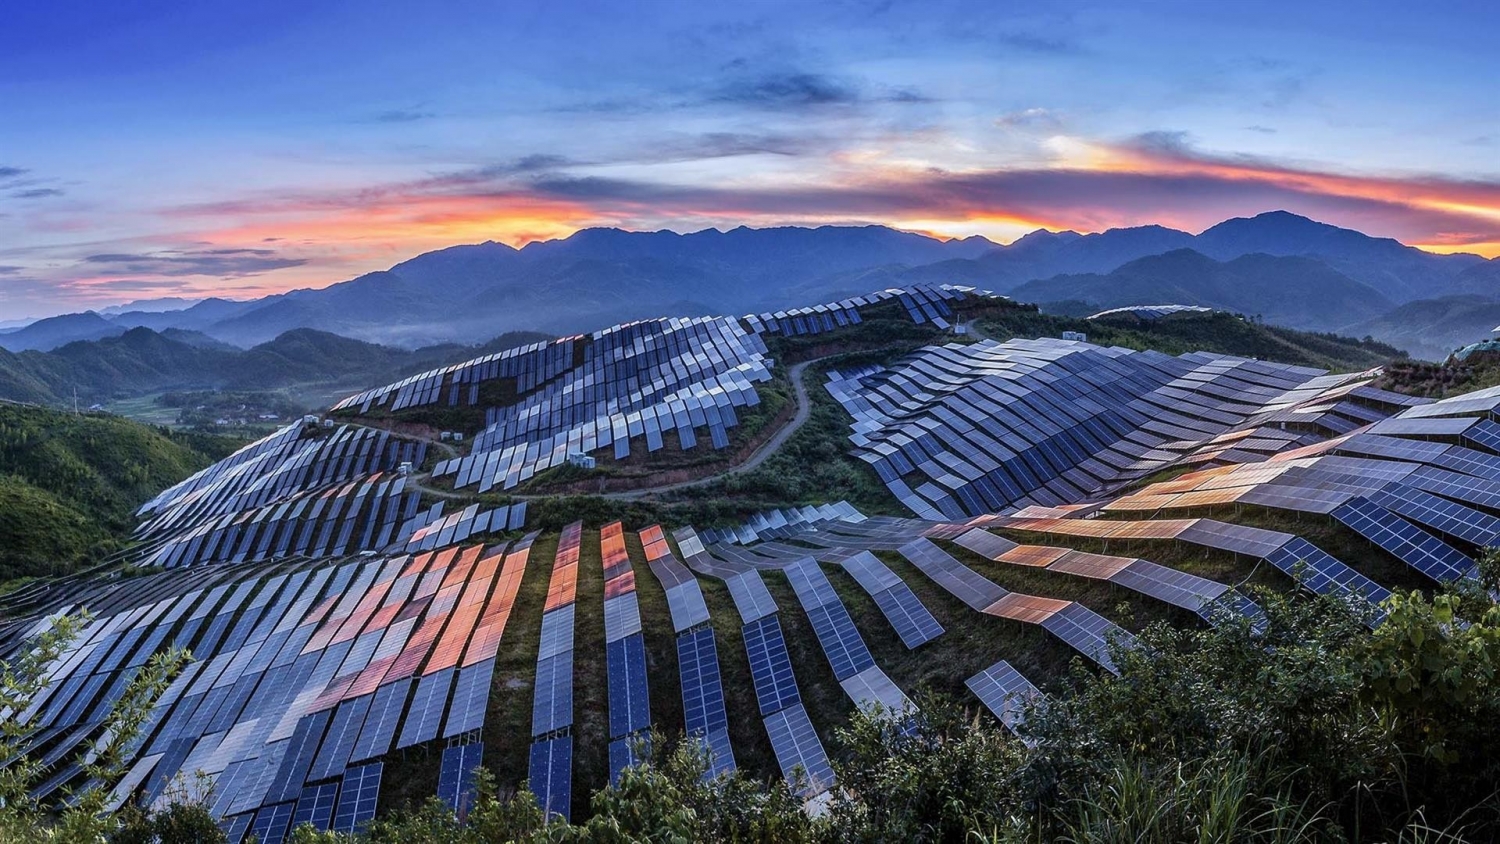 Chuyển đổi năng lượng ở châu Á: Trung Quốc dẫn đầu dù không hoàn hảo